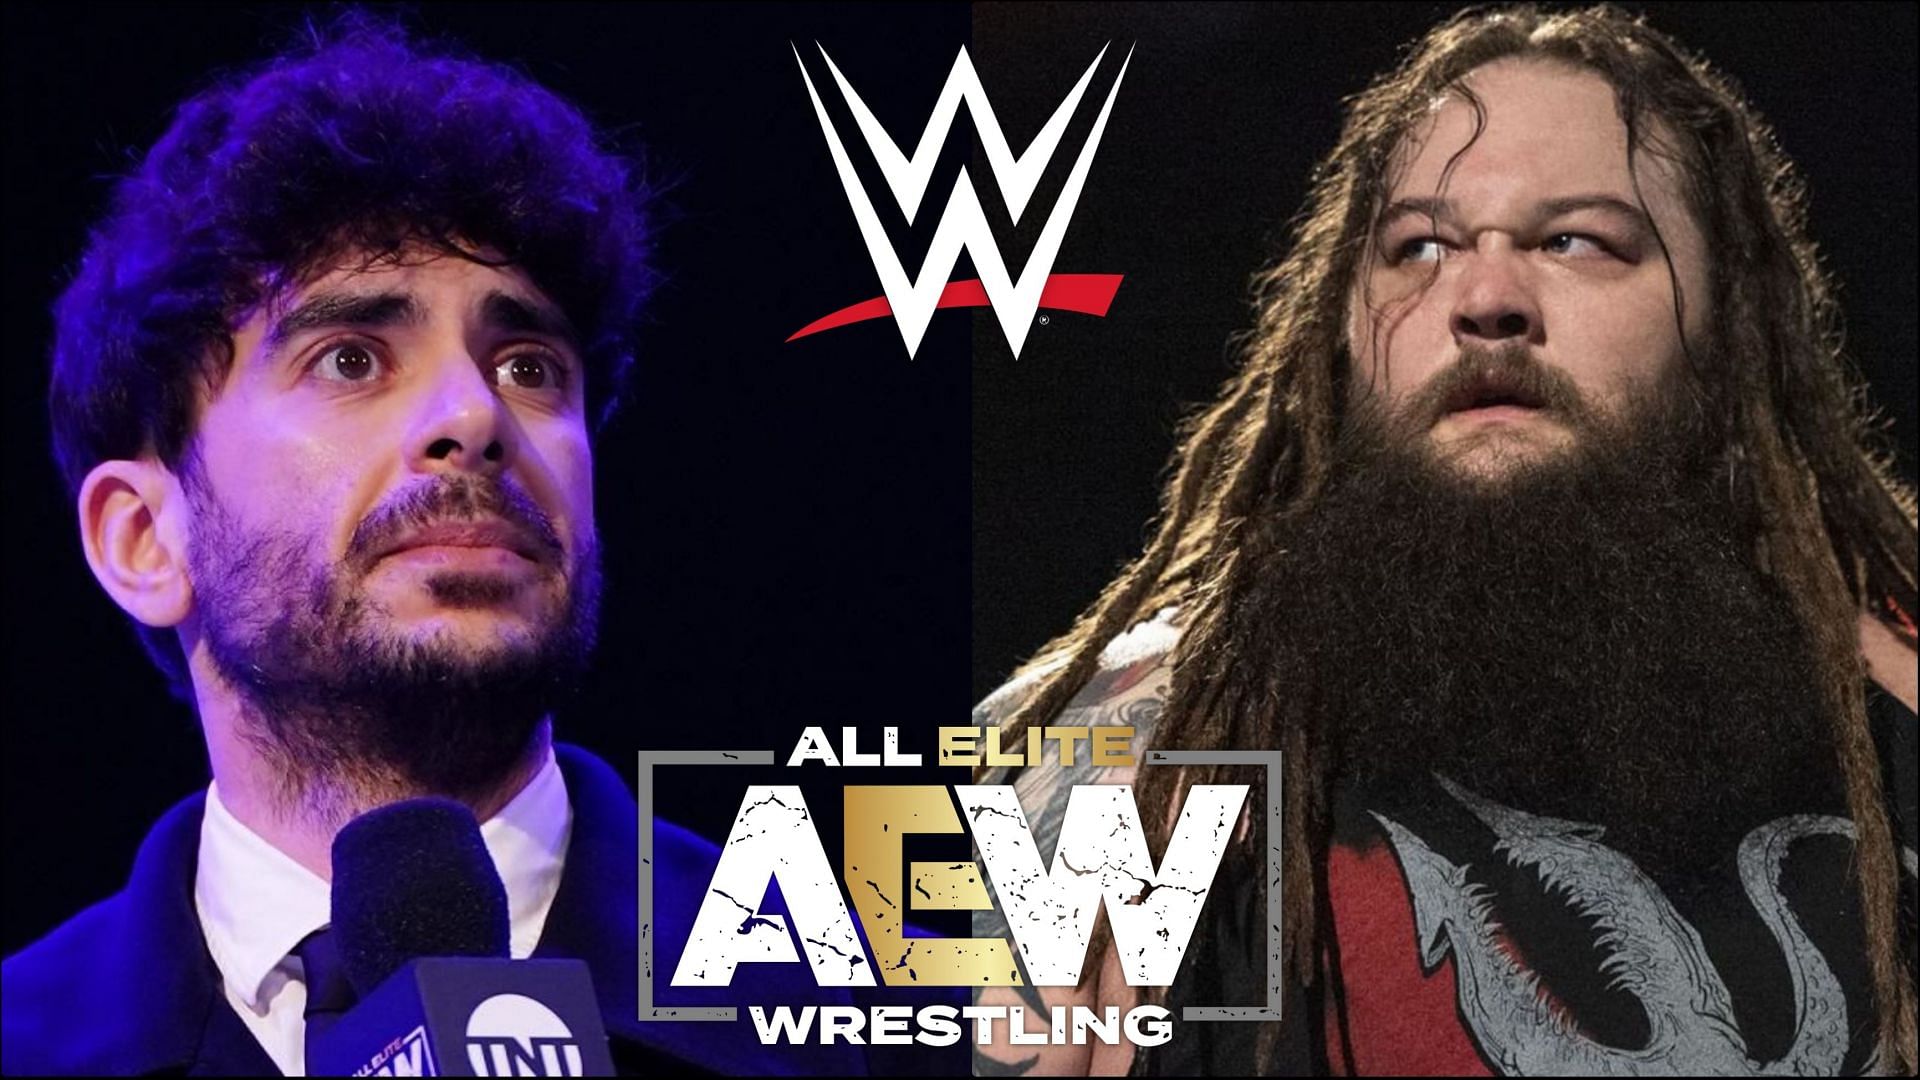 Why did Bray Wyatt choose WWE over AEW?